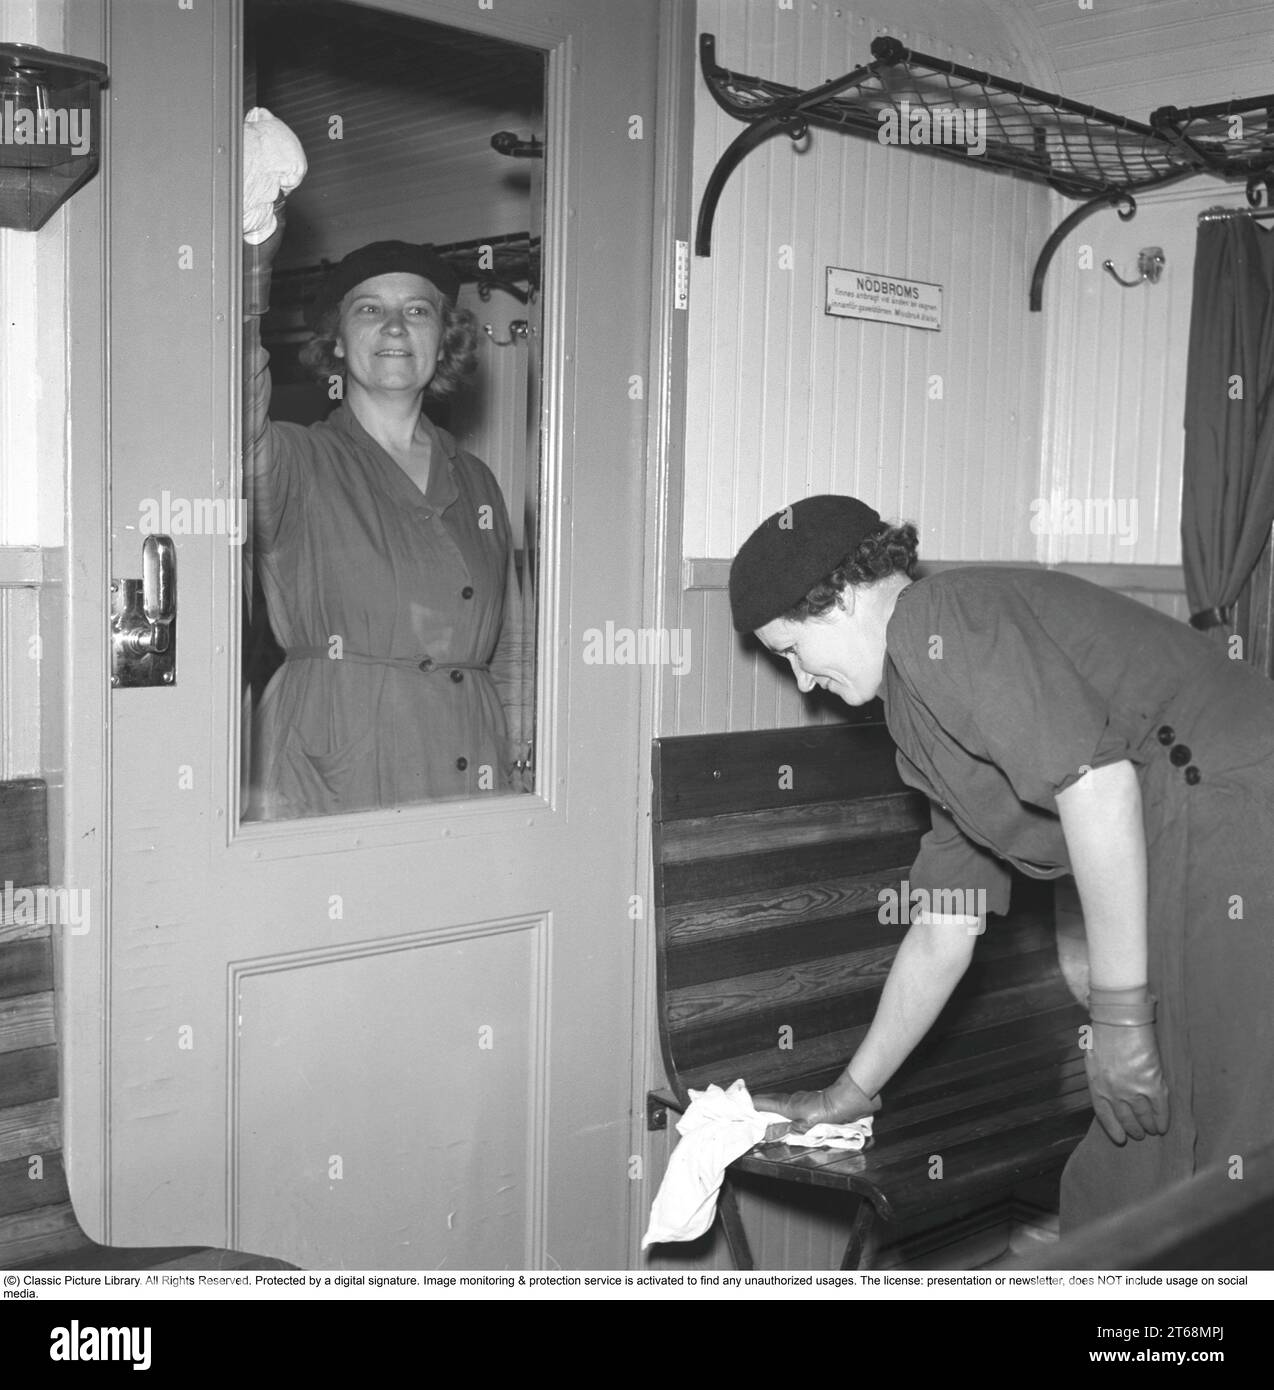 Arbeit in den 1940er Jahren Zwei Frauen werden beim Reinigen eines Zugwagens, des Glasfensters und der Holzsitze gesehen. Schweden September 1941. Kristoffersson 202-1 Stockfoto